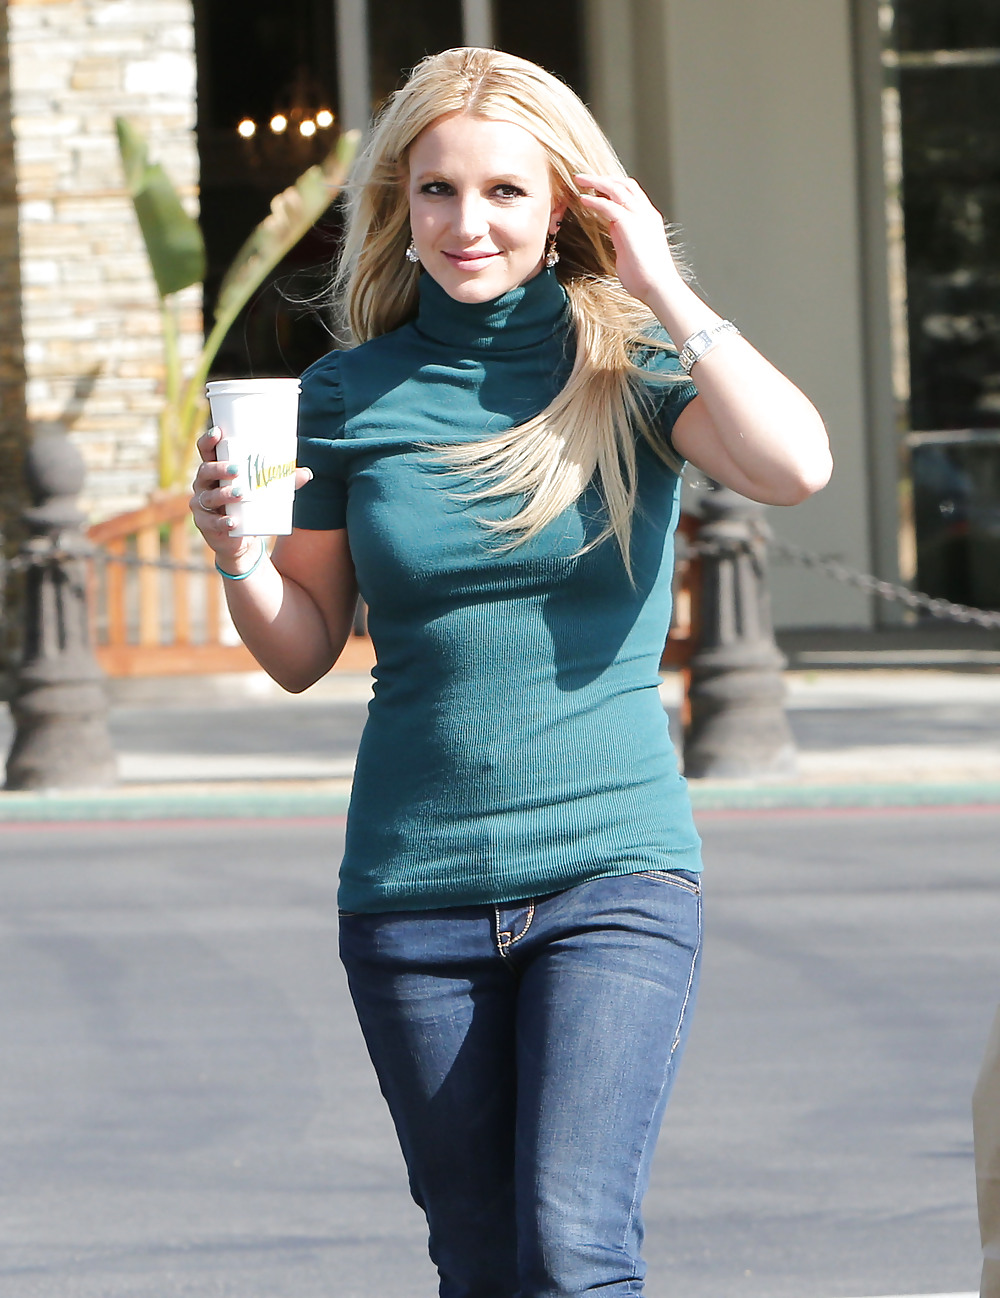 Britney spears - se consiguió un sujetador milagroso
 #16398661